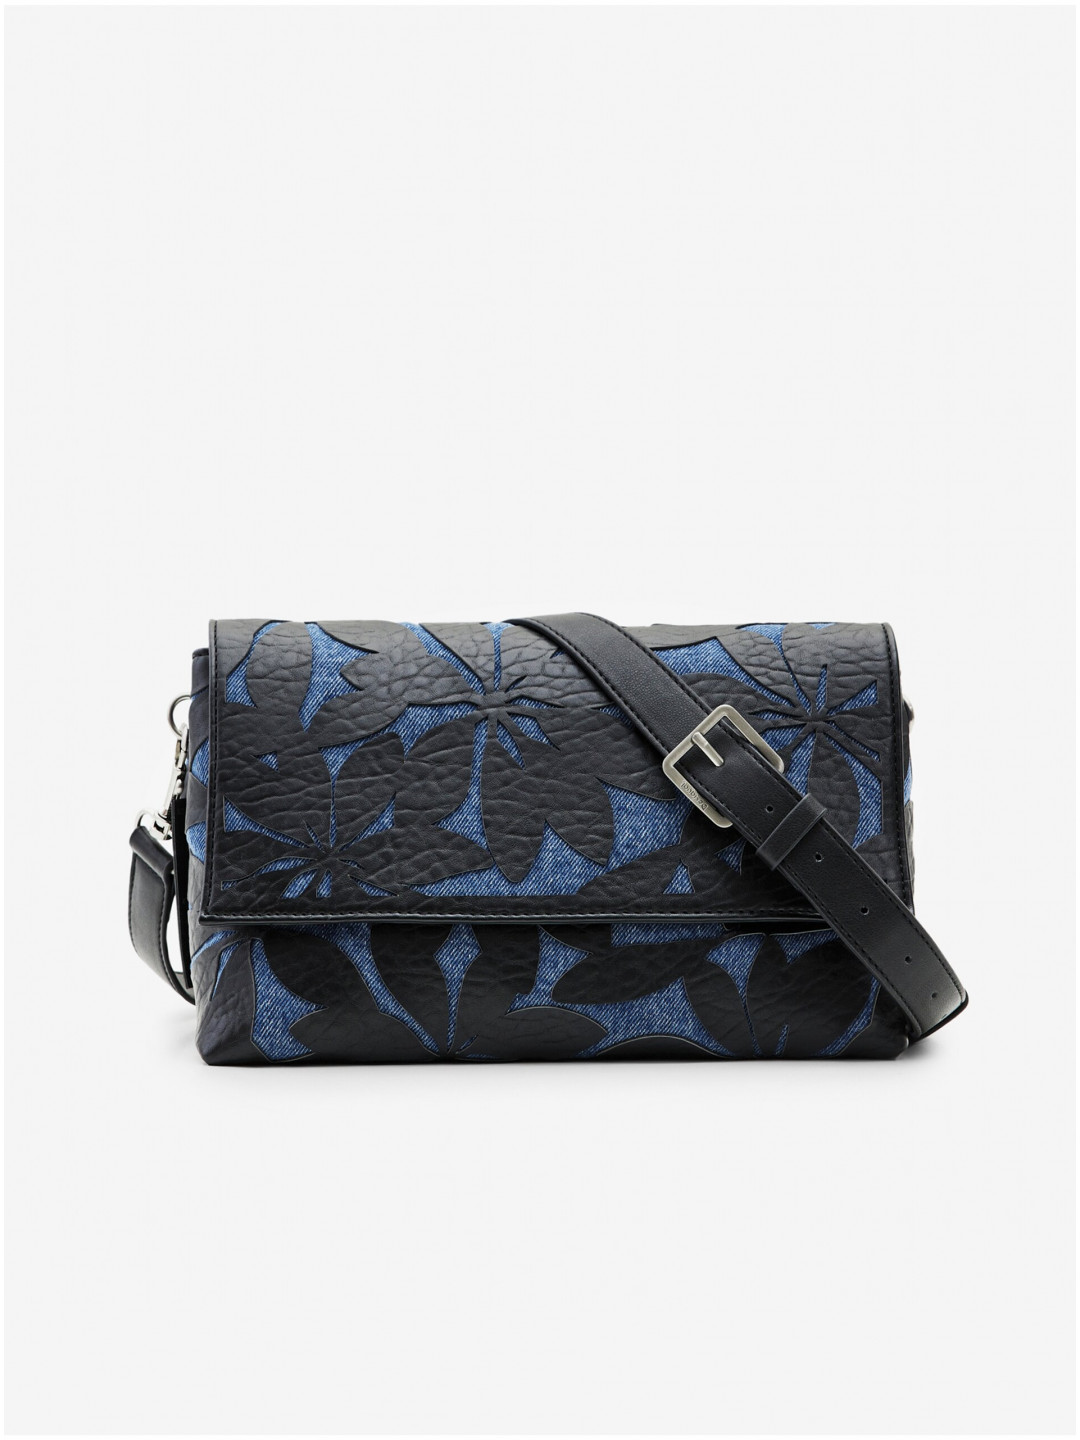 Modro-černá dámská vzorovaná kabelka Desigual Onyx Venecia 2 0